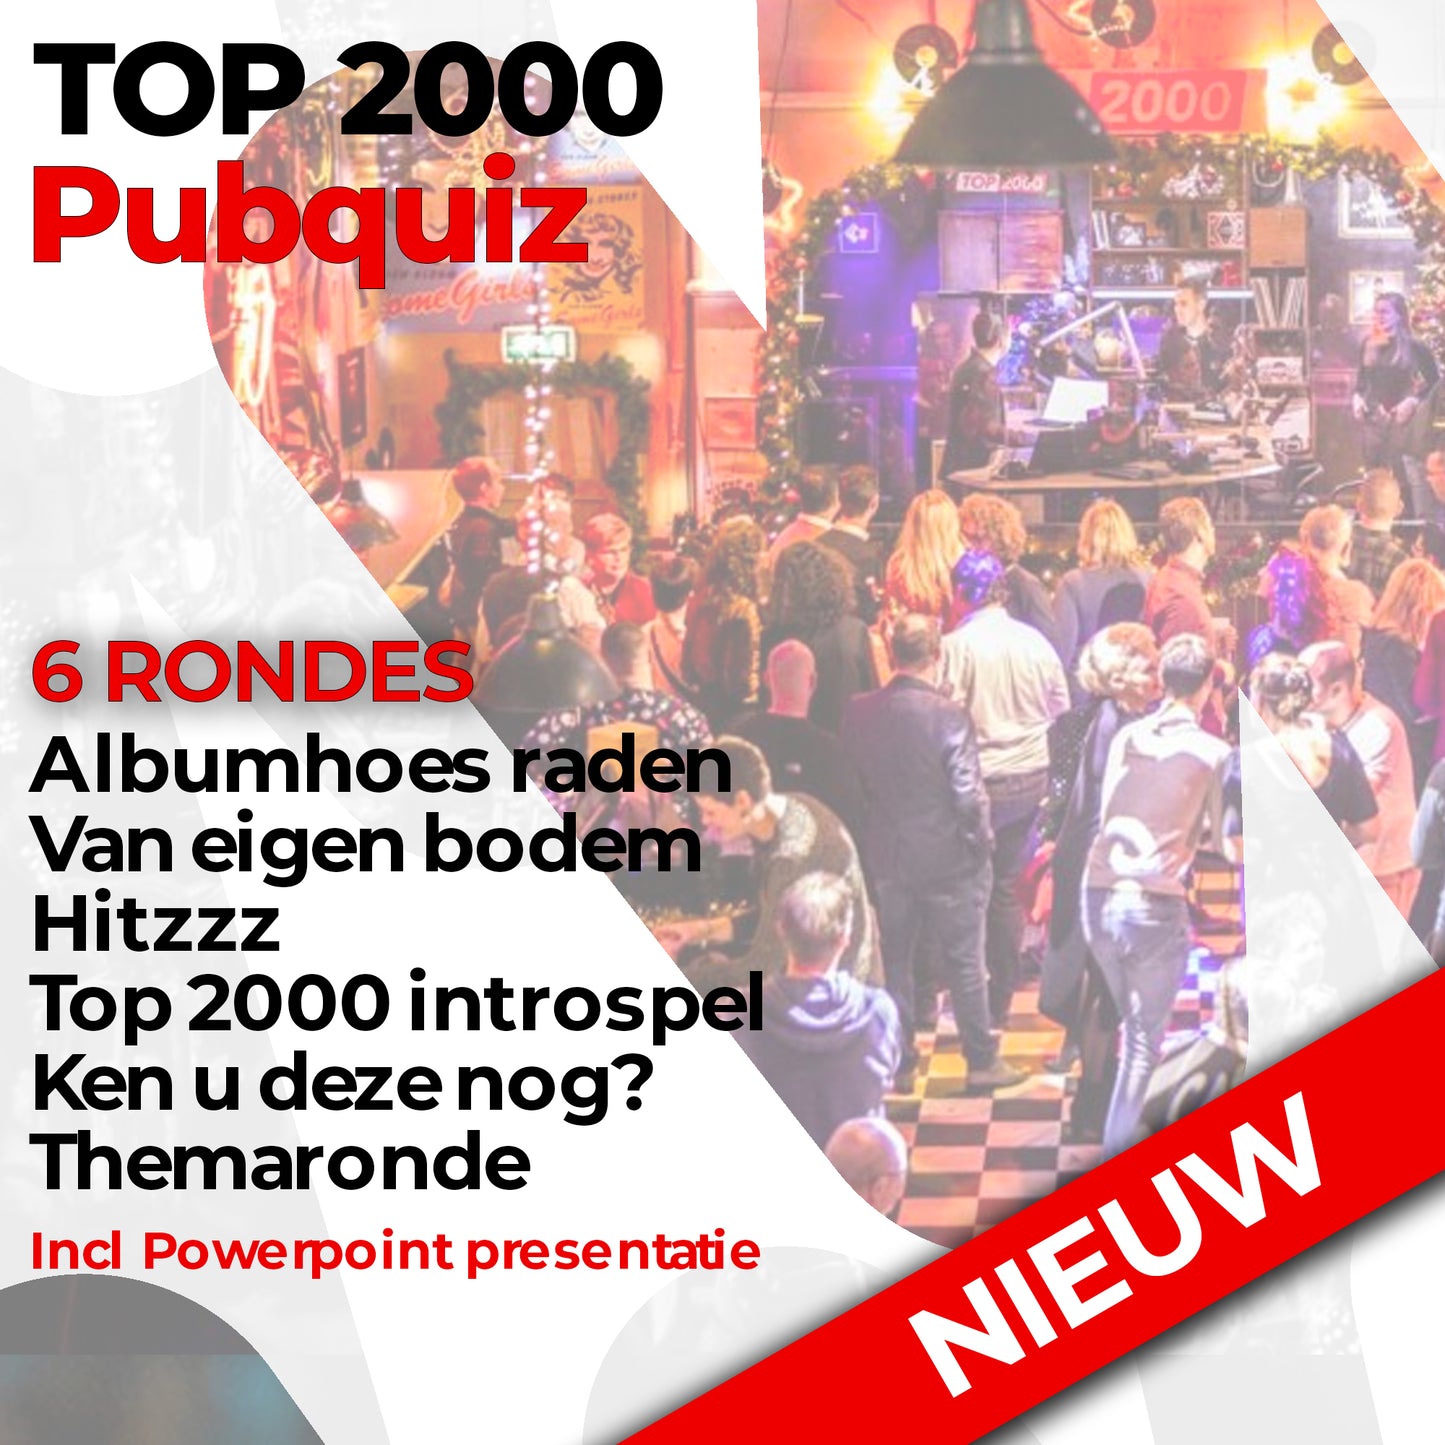 Top 2000 Pubquiz | 60 vragen | Laatste editie top 2000 | Muziek, Albumhoes plaatsjes - 🥇  QuizKopen